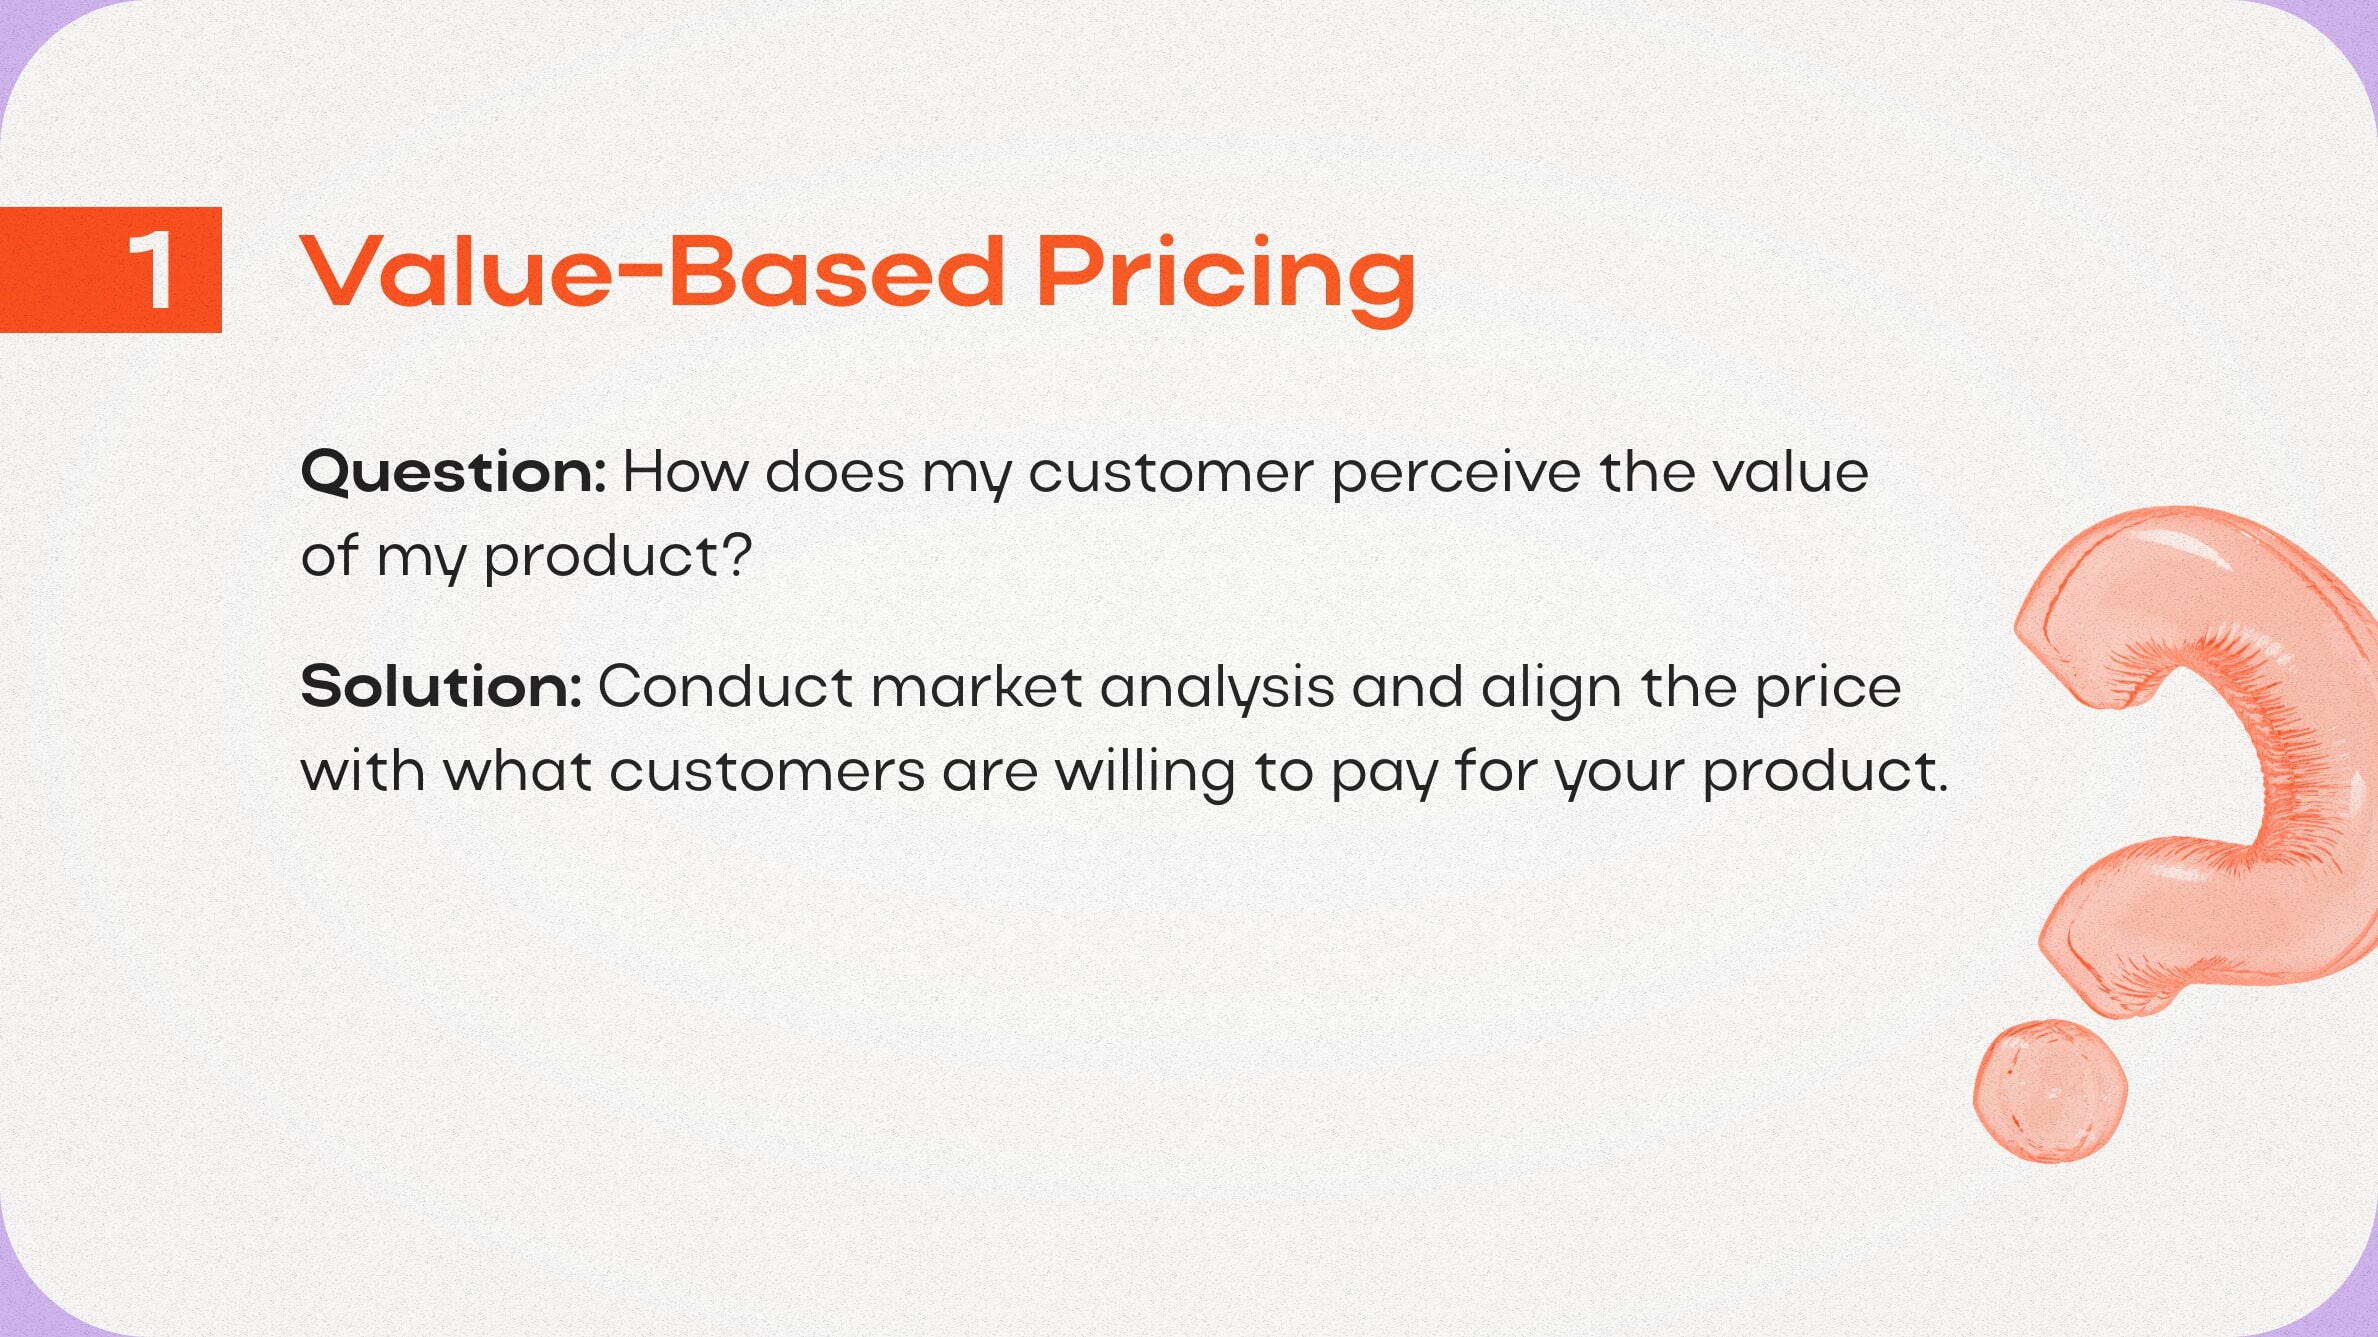 Value-based pricing framework